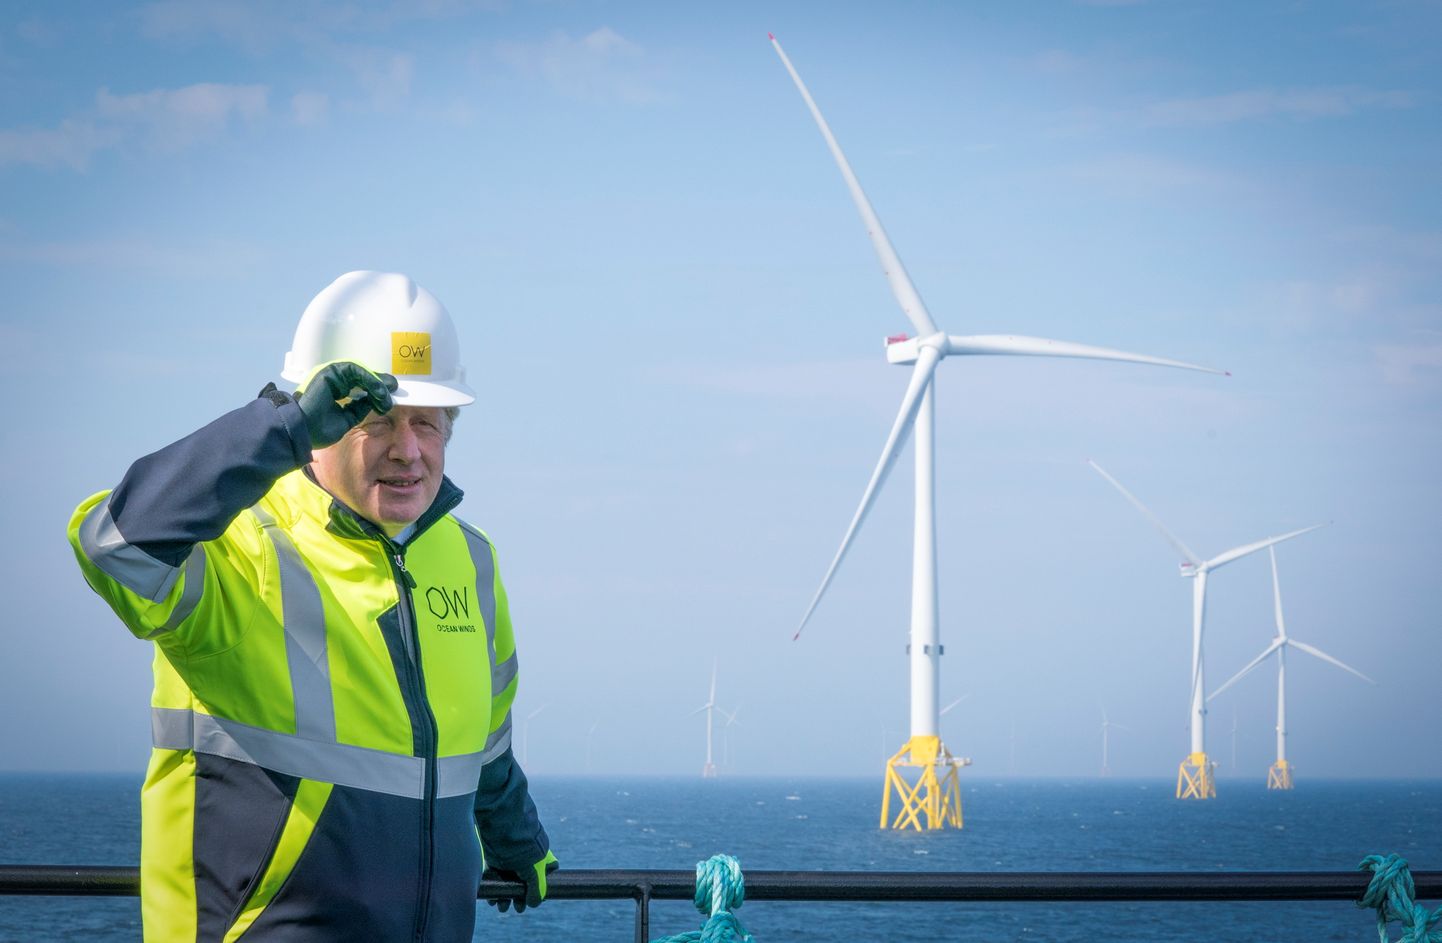 Ühendkuningriigi peaminister Boris Johnson Taani tuuleparke teenindava töölaeva Esvagt Alba pardal külastamas Moray Offshore Windfarm East tuuleparki Šotimaa Aberdeenshire ranniku lähedal. Tuulepargi eelistamine on põhjustanud Šotimaal palju pahameelt, kuna vähendab sealsete kivisöe- ja naftaettevõtete tulusid ning seab ohtu nende töötajate töökohad. Jane Barlow/Pool via REUTERS